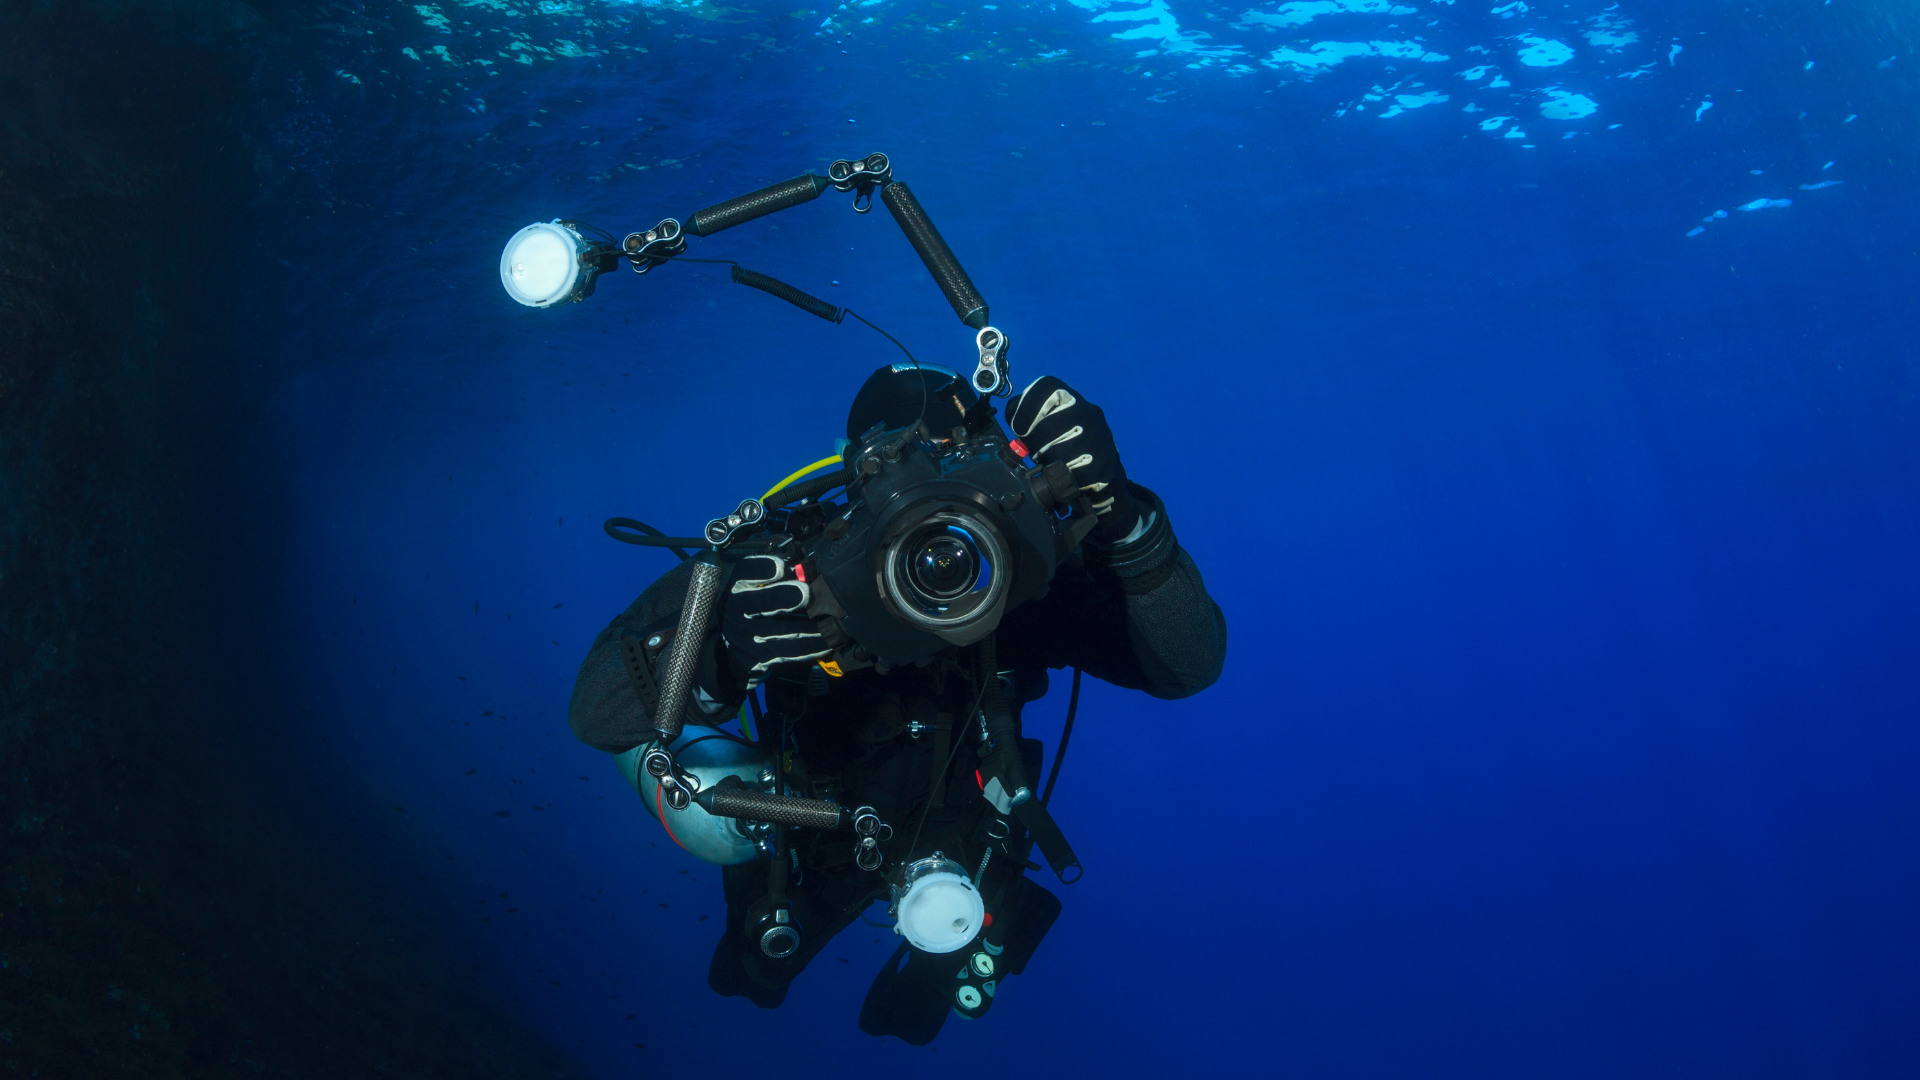 Fotografia subacquea: 10 motivi che attraggono i subacquei